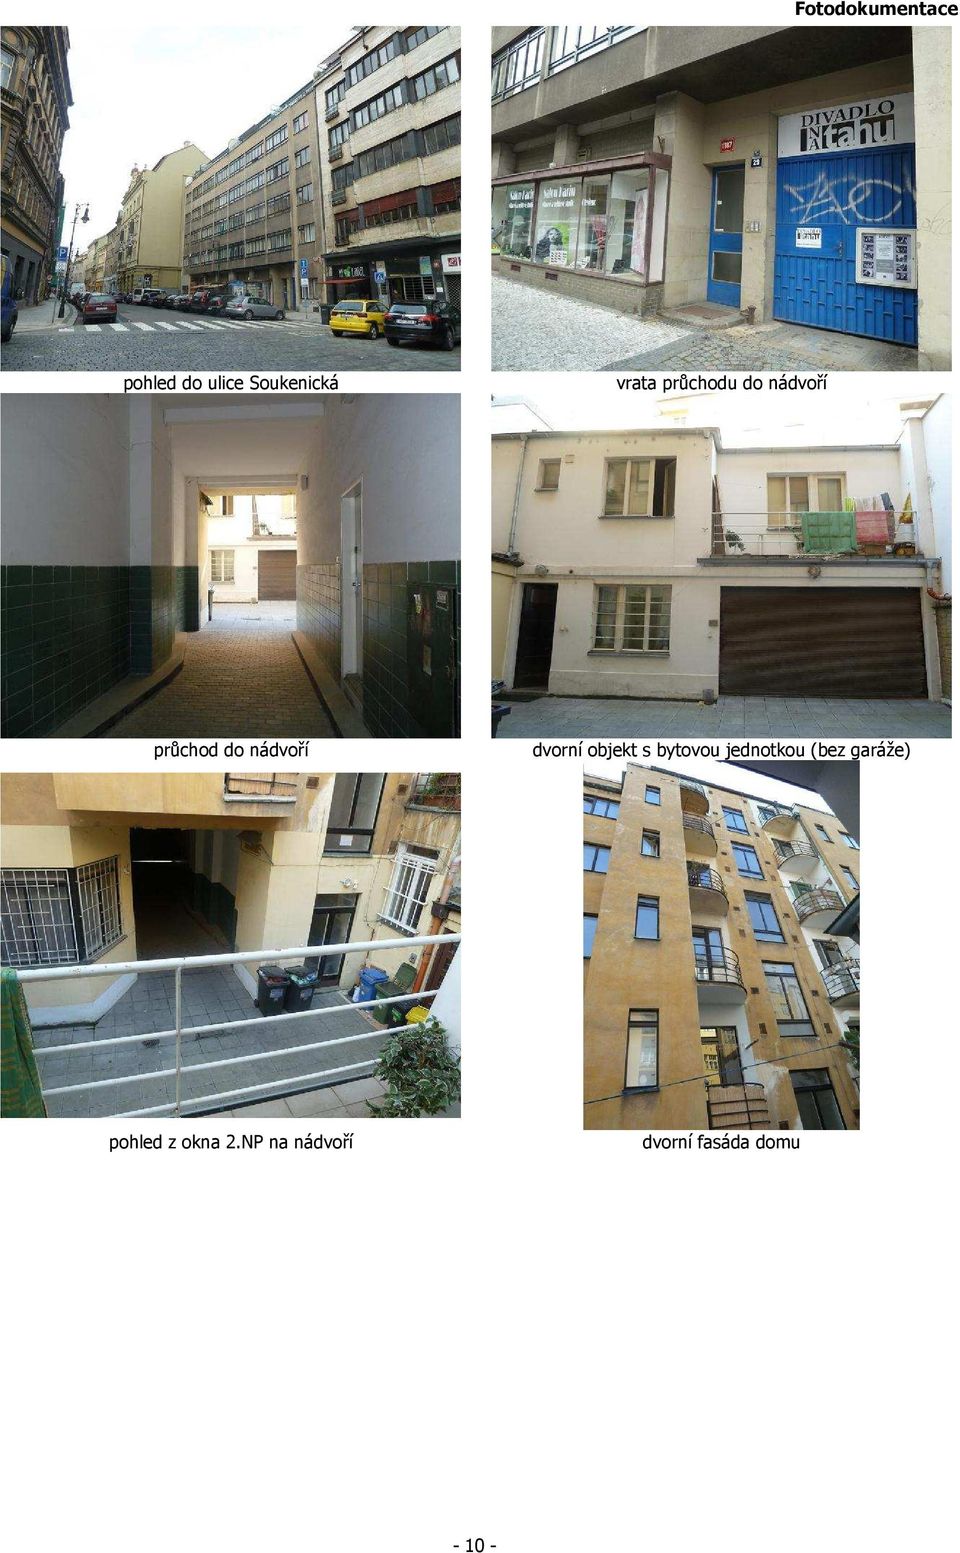 dvorní objekt s bytovou jednotkou (bez garáže)